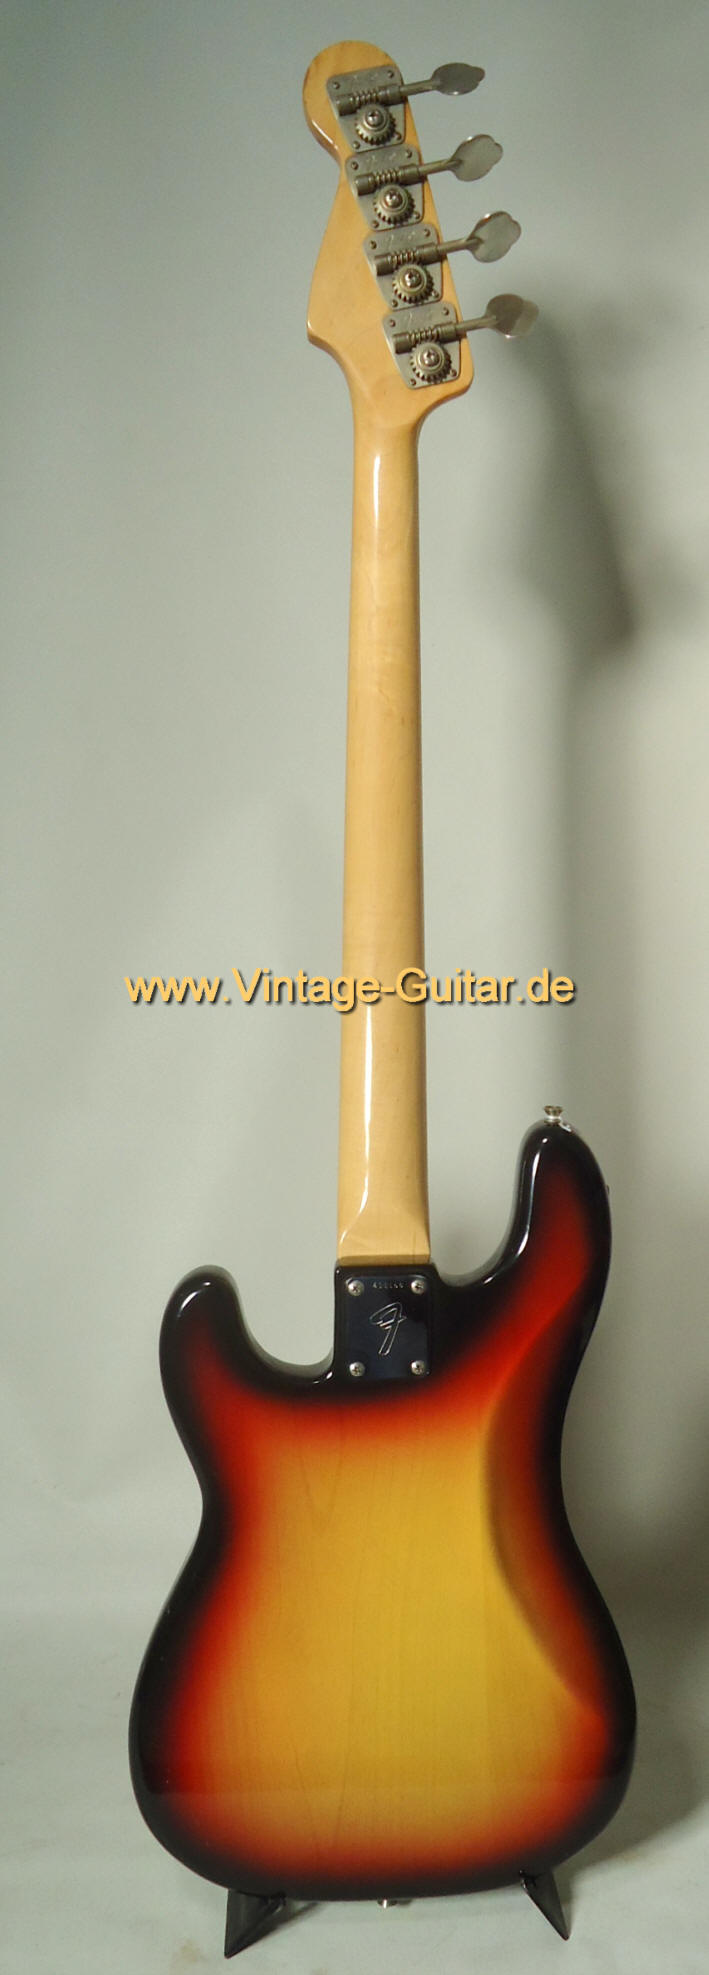 Fender Precision Bass 1974 sunburst aae.jpg